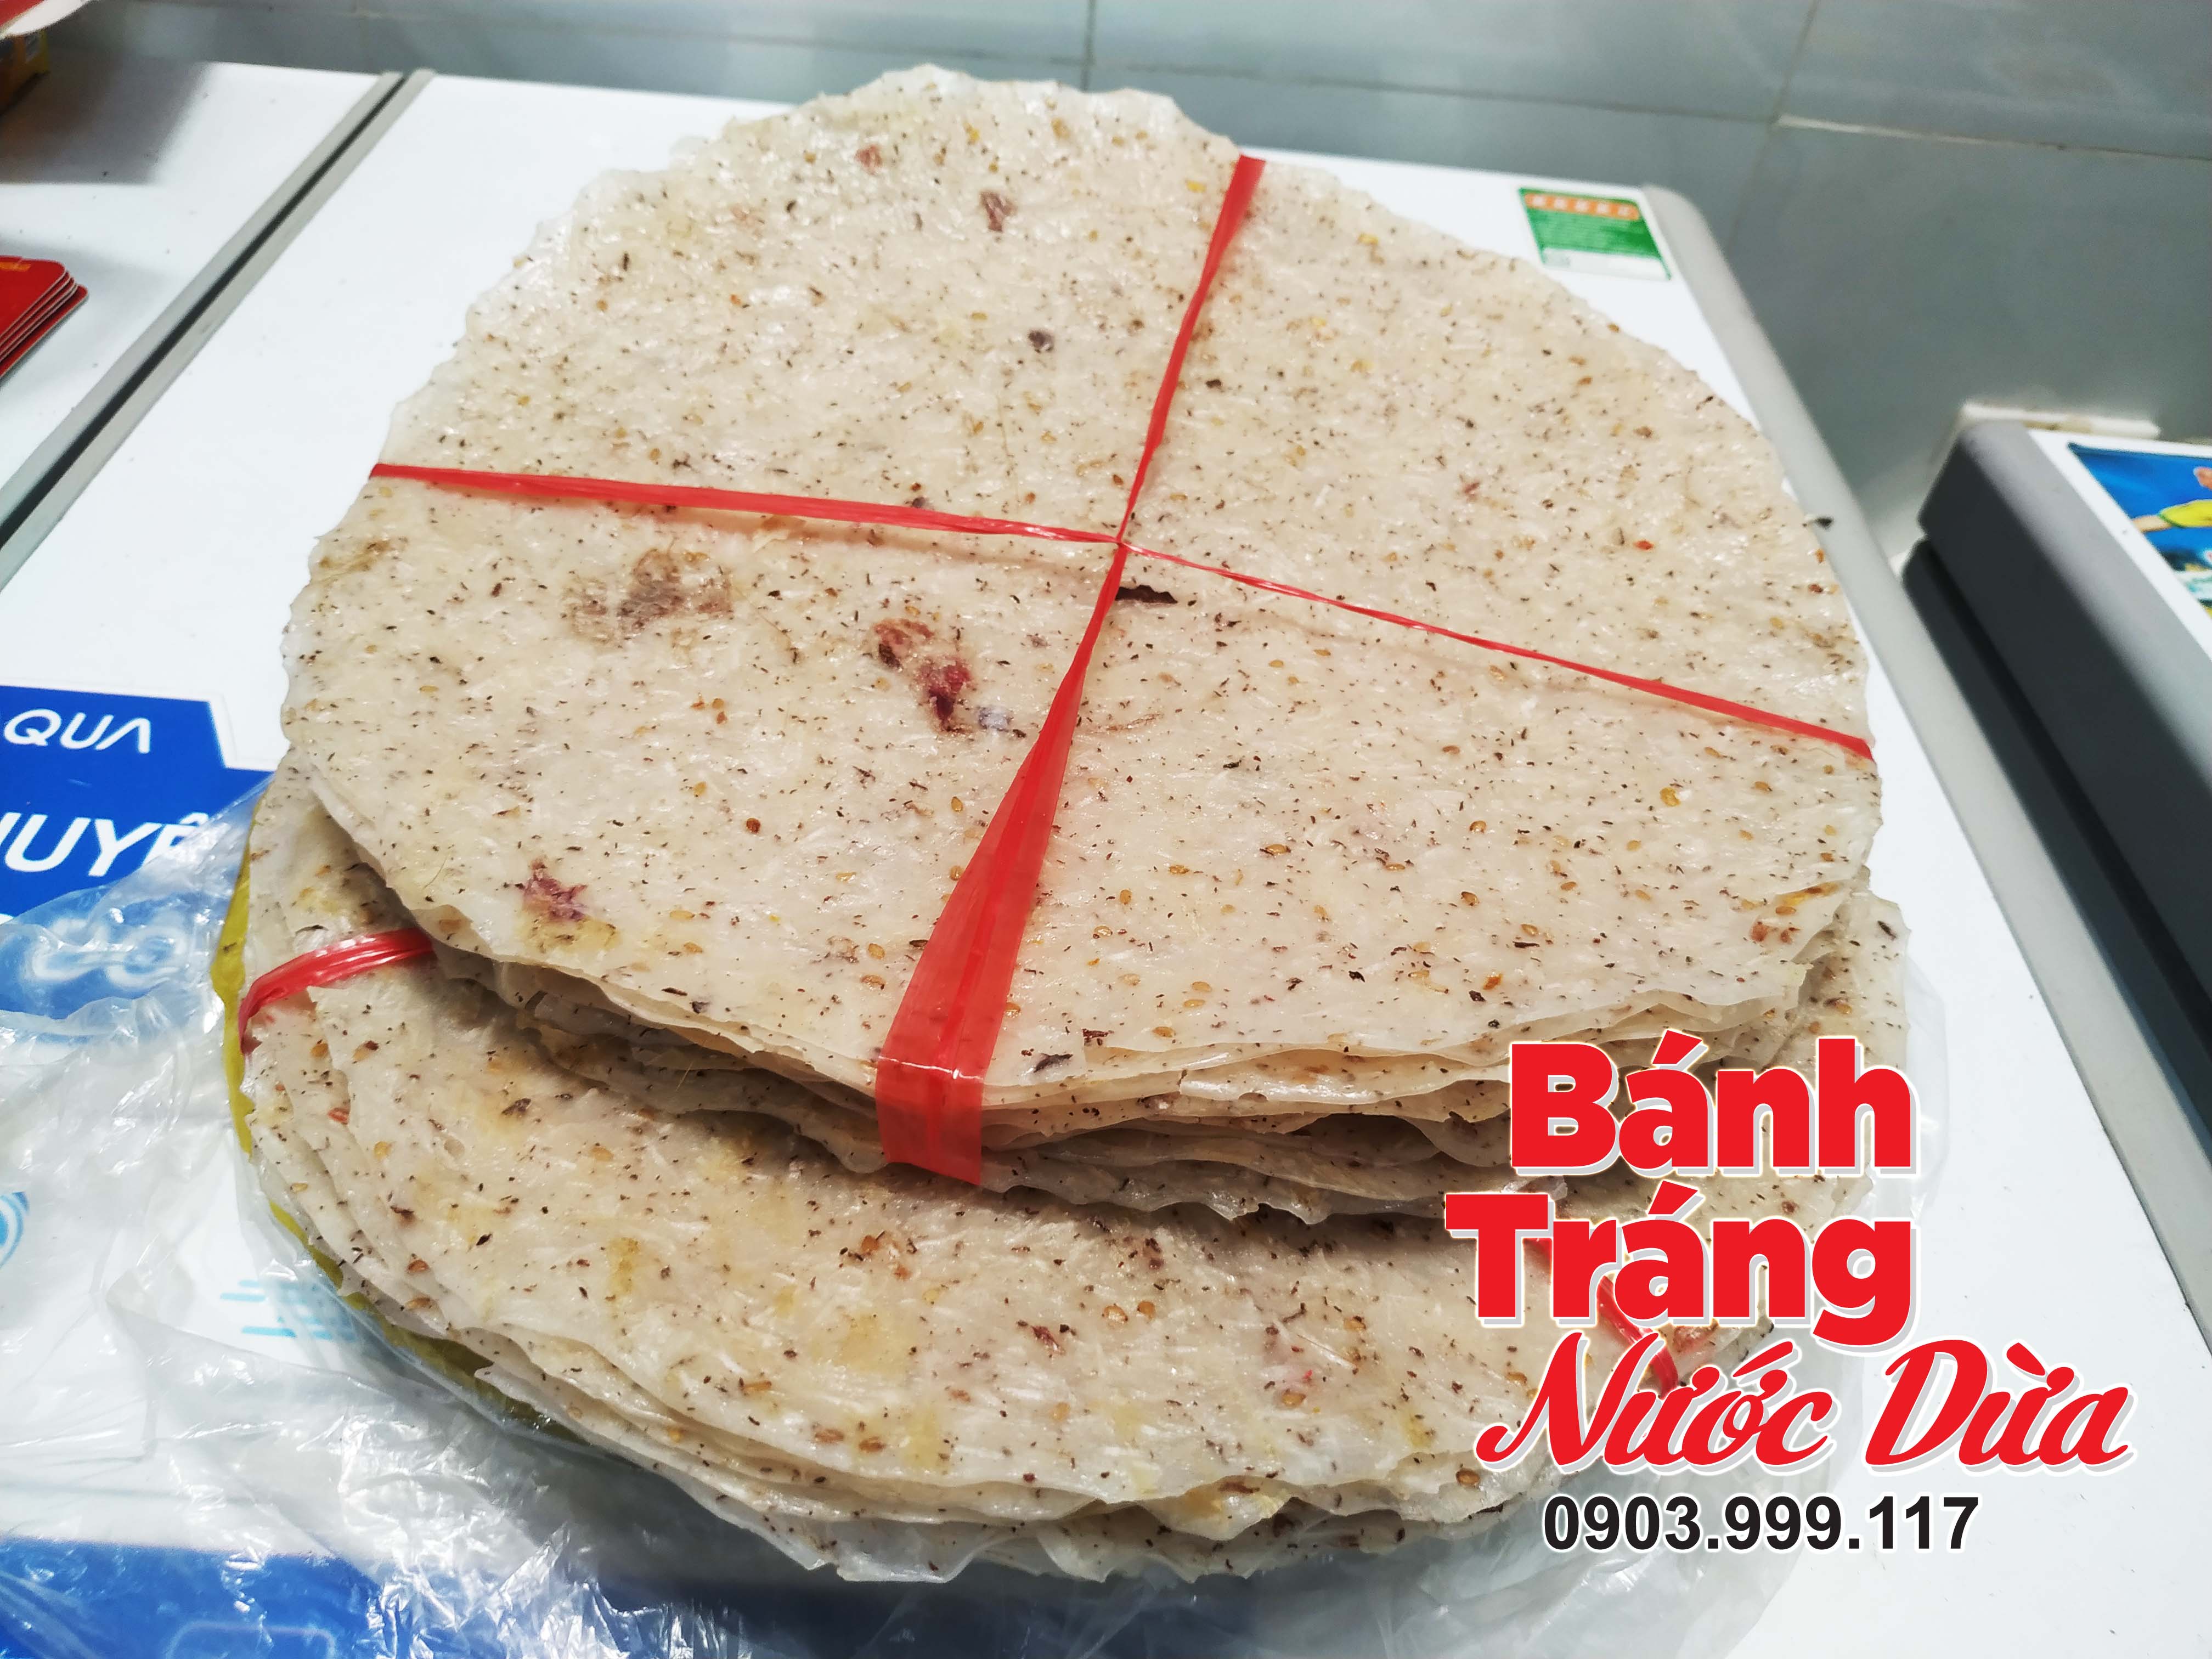 Bánh tráng dừa đặc sản Bình Định ngon